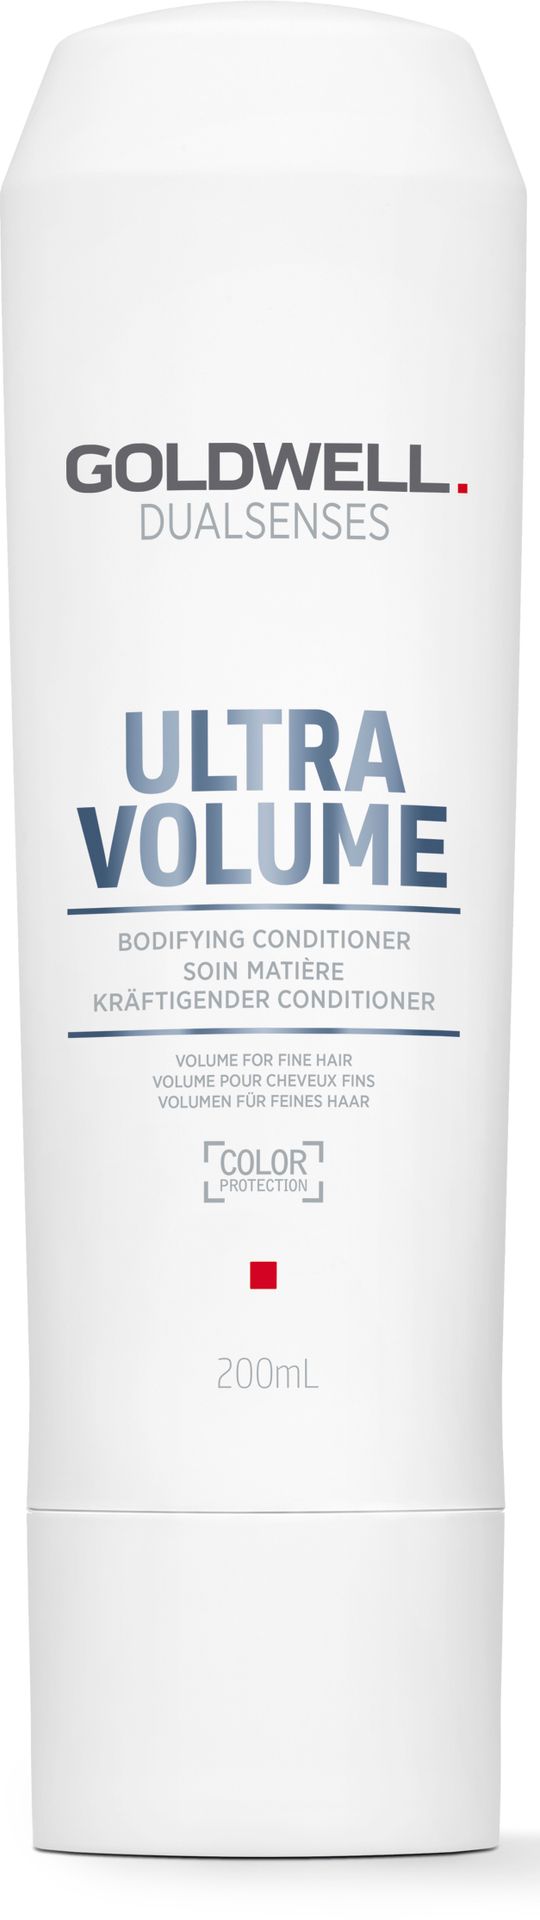 Goldwell Dualsenses Ultra Volume Bodifying Conditioner odżywka do włosów delikatnych, bez objętości 200 ml